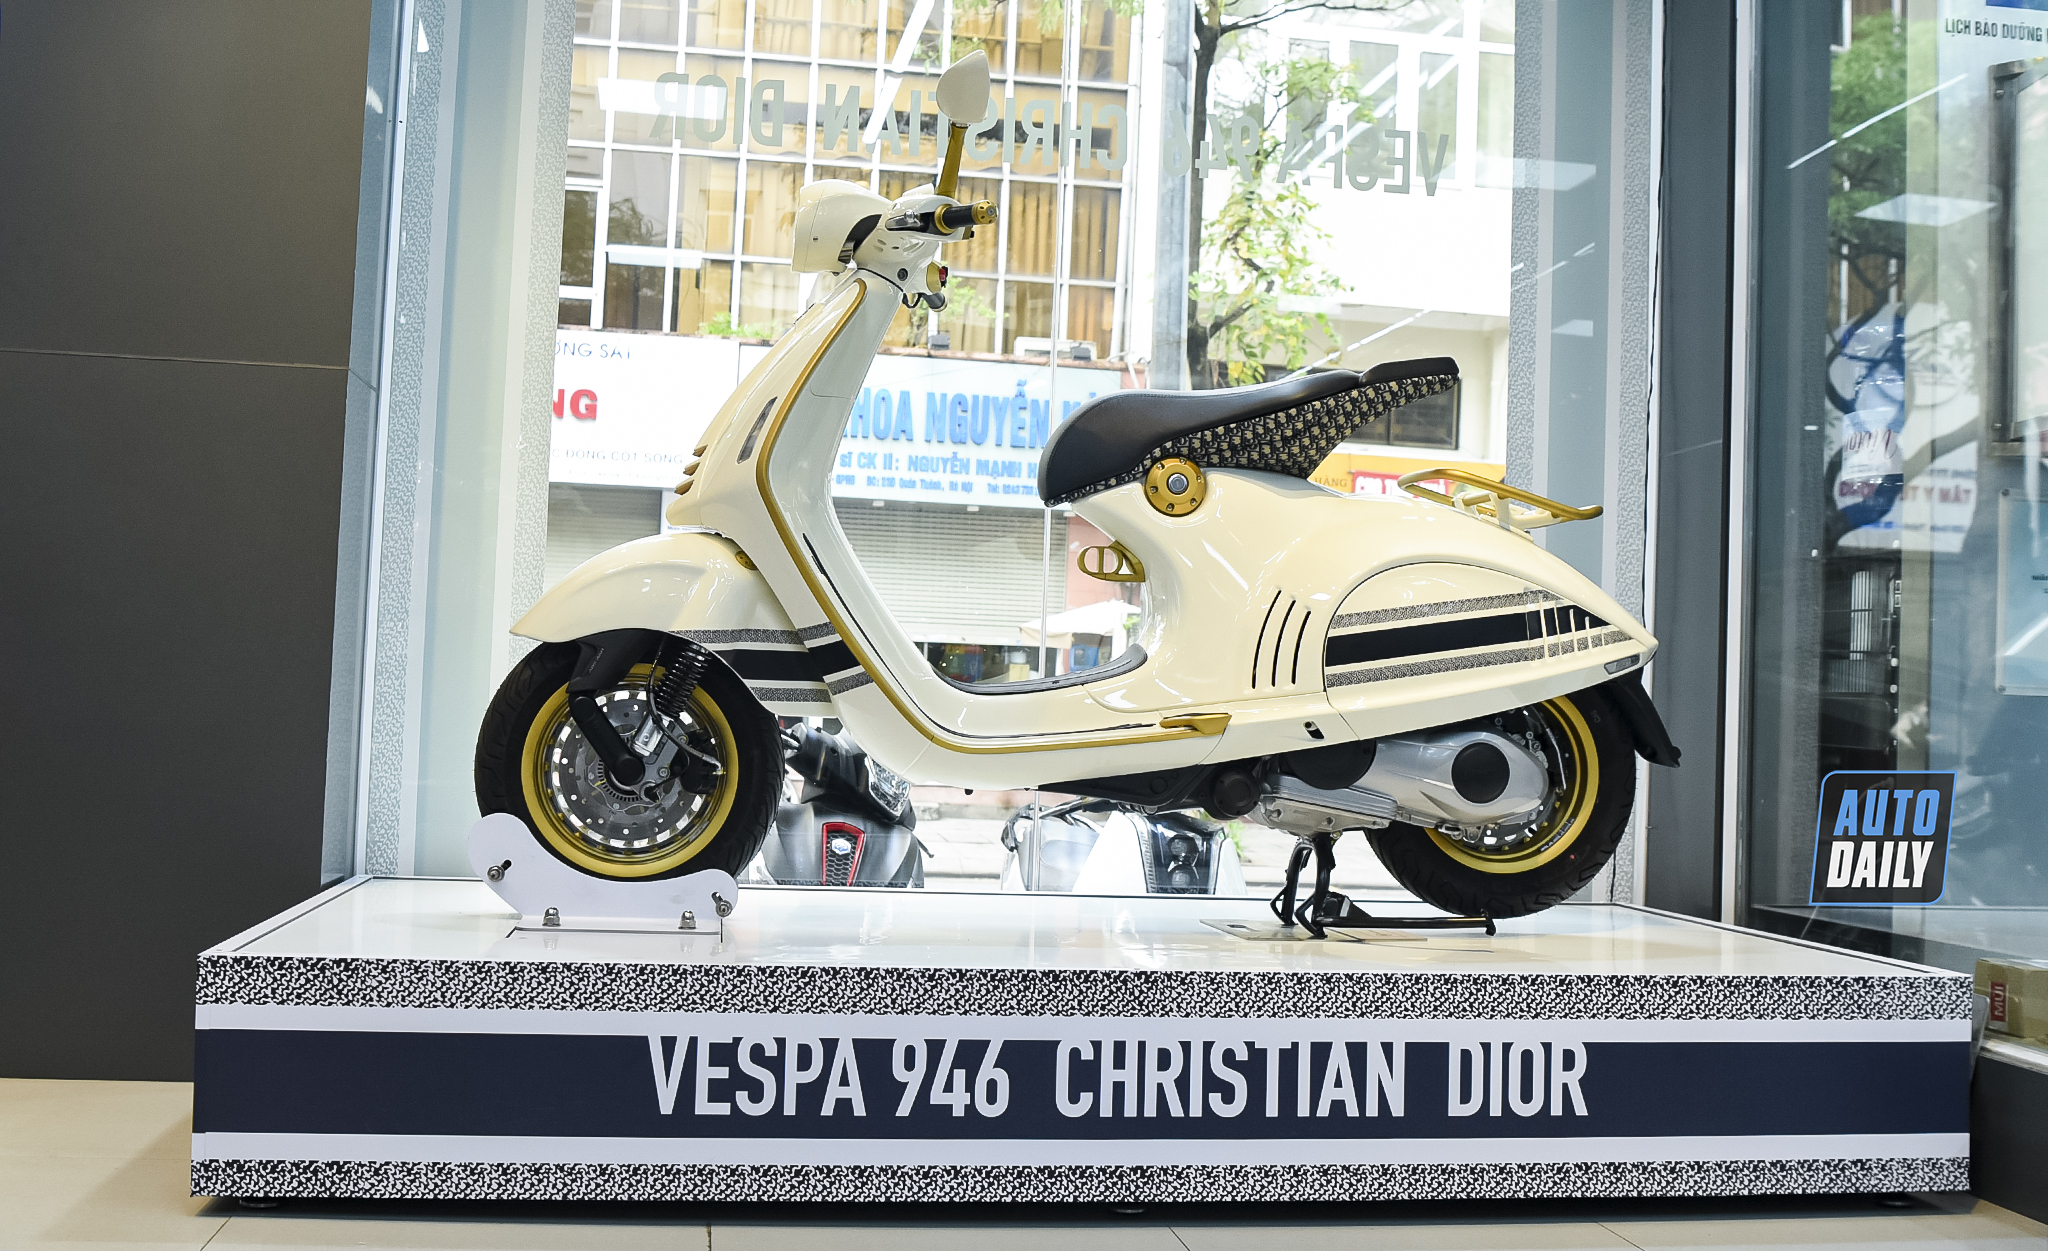 Cận cảnh siêu phẩm xe tay ga Vespa 946 được thiết kế bởi Christian Dior